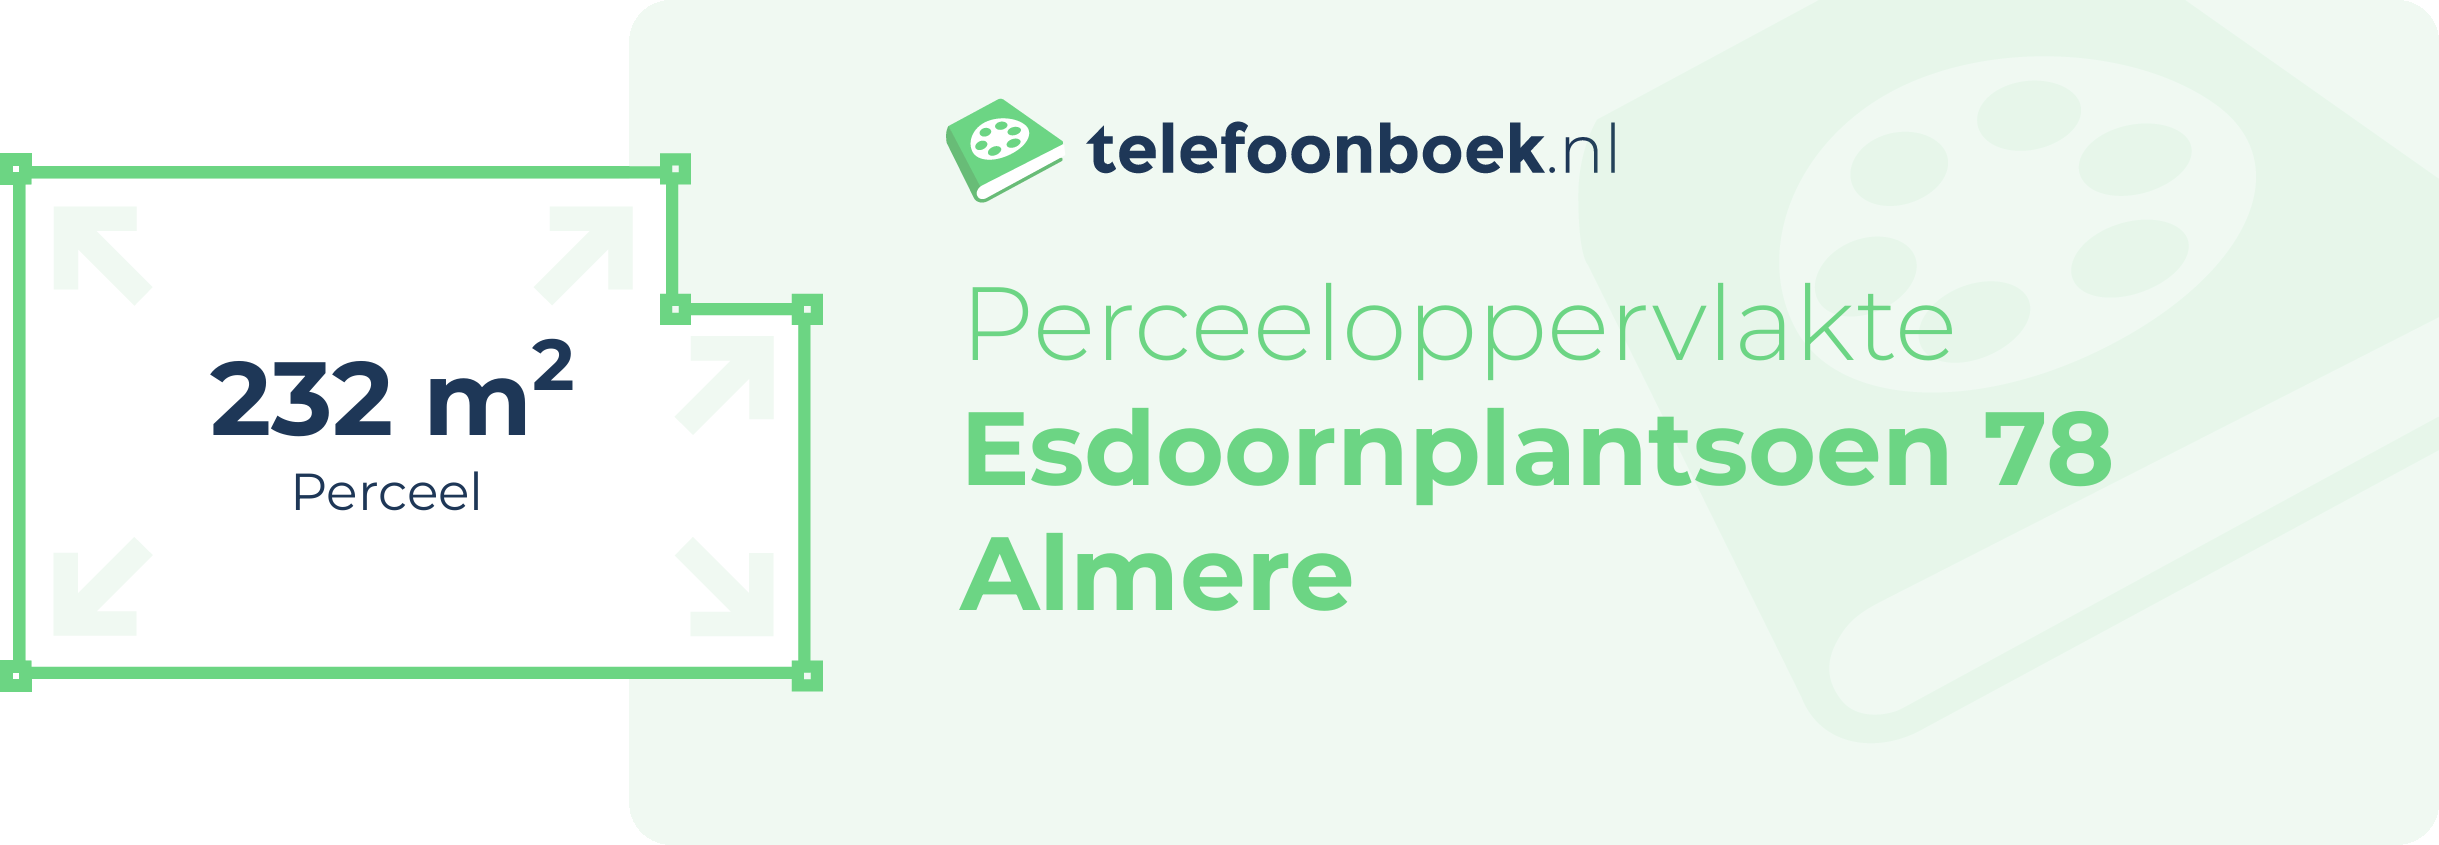 Perceeloppervlakte Esdoornplantsoen 78 Almere